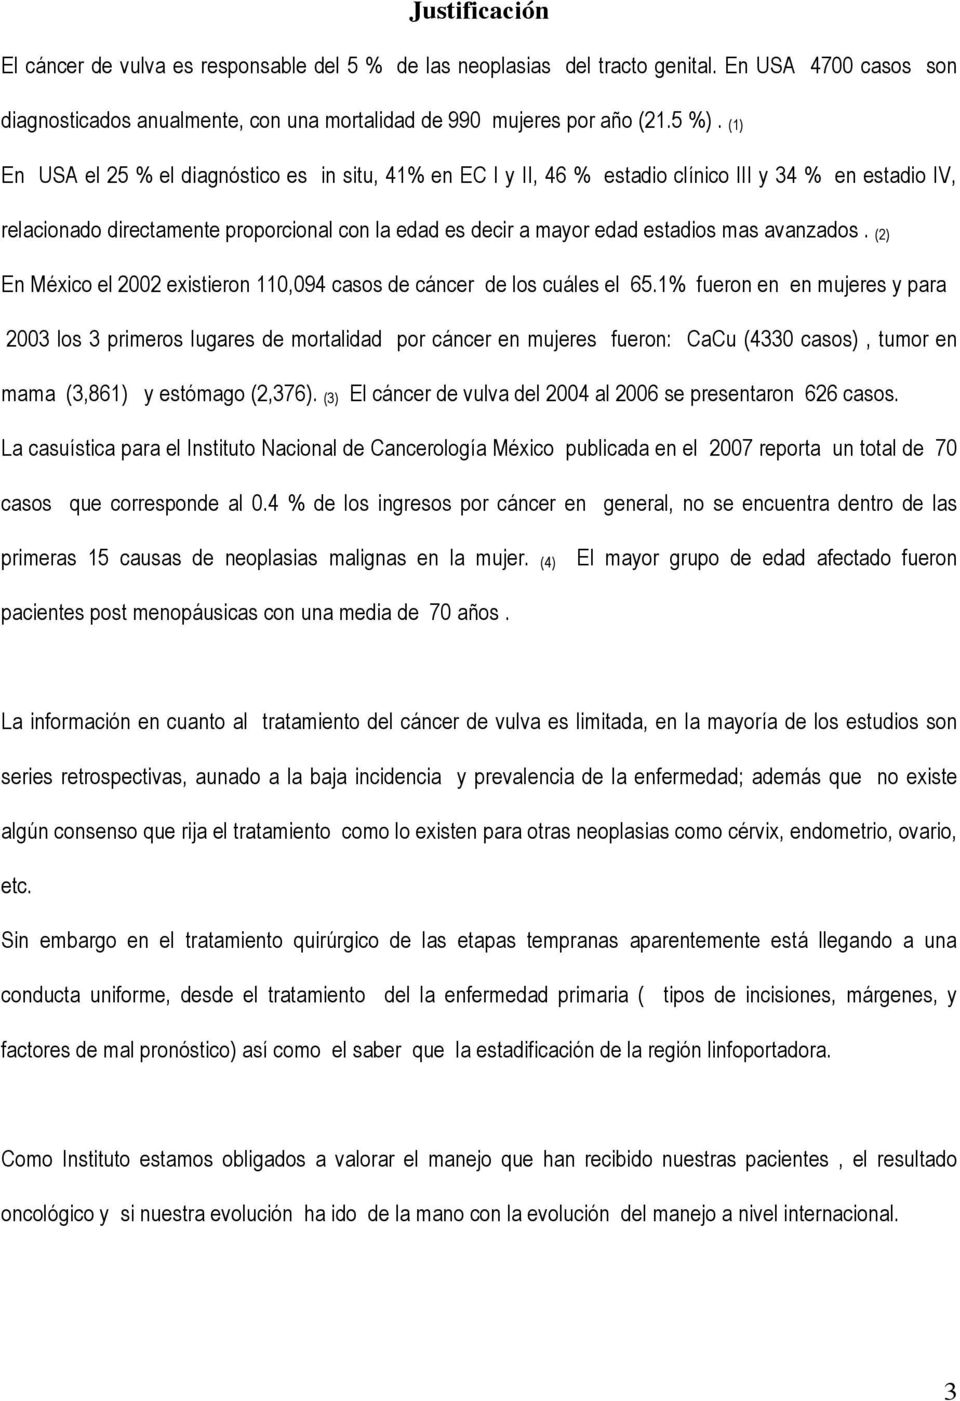 avanzados. (2) En México el 2002 existieron 110,094 casos de cáncer de los cuáles el 65.